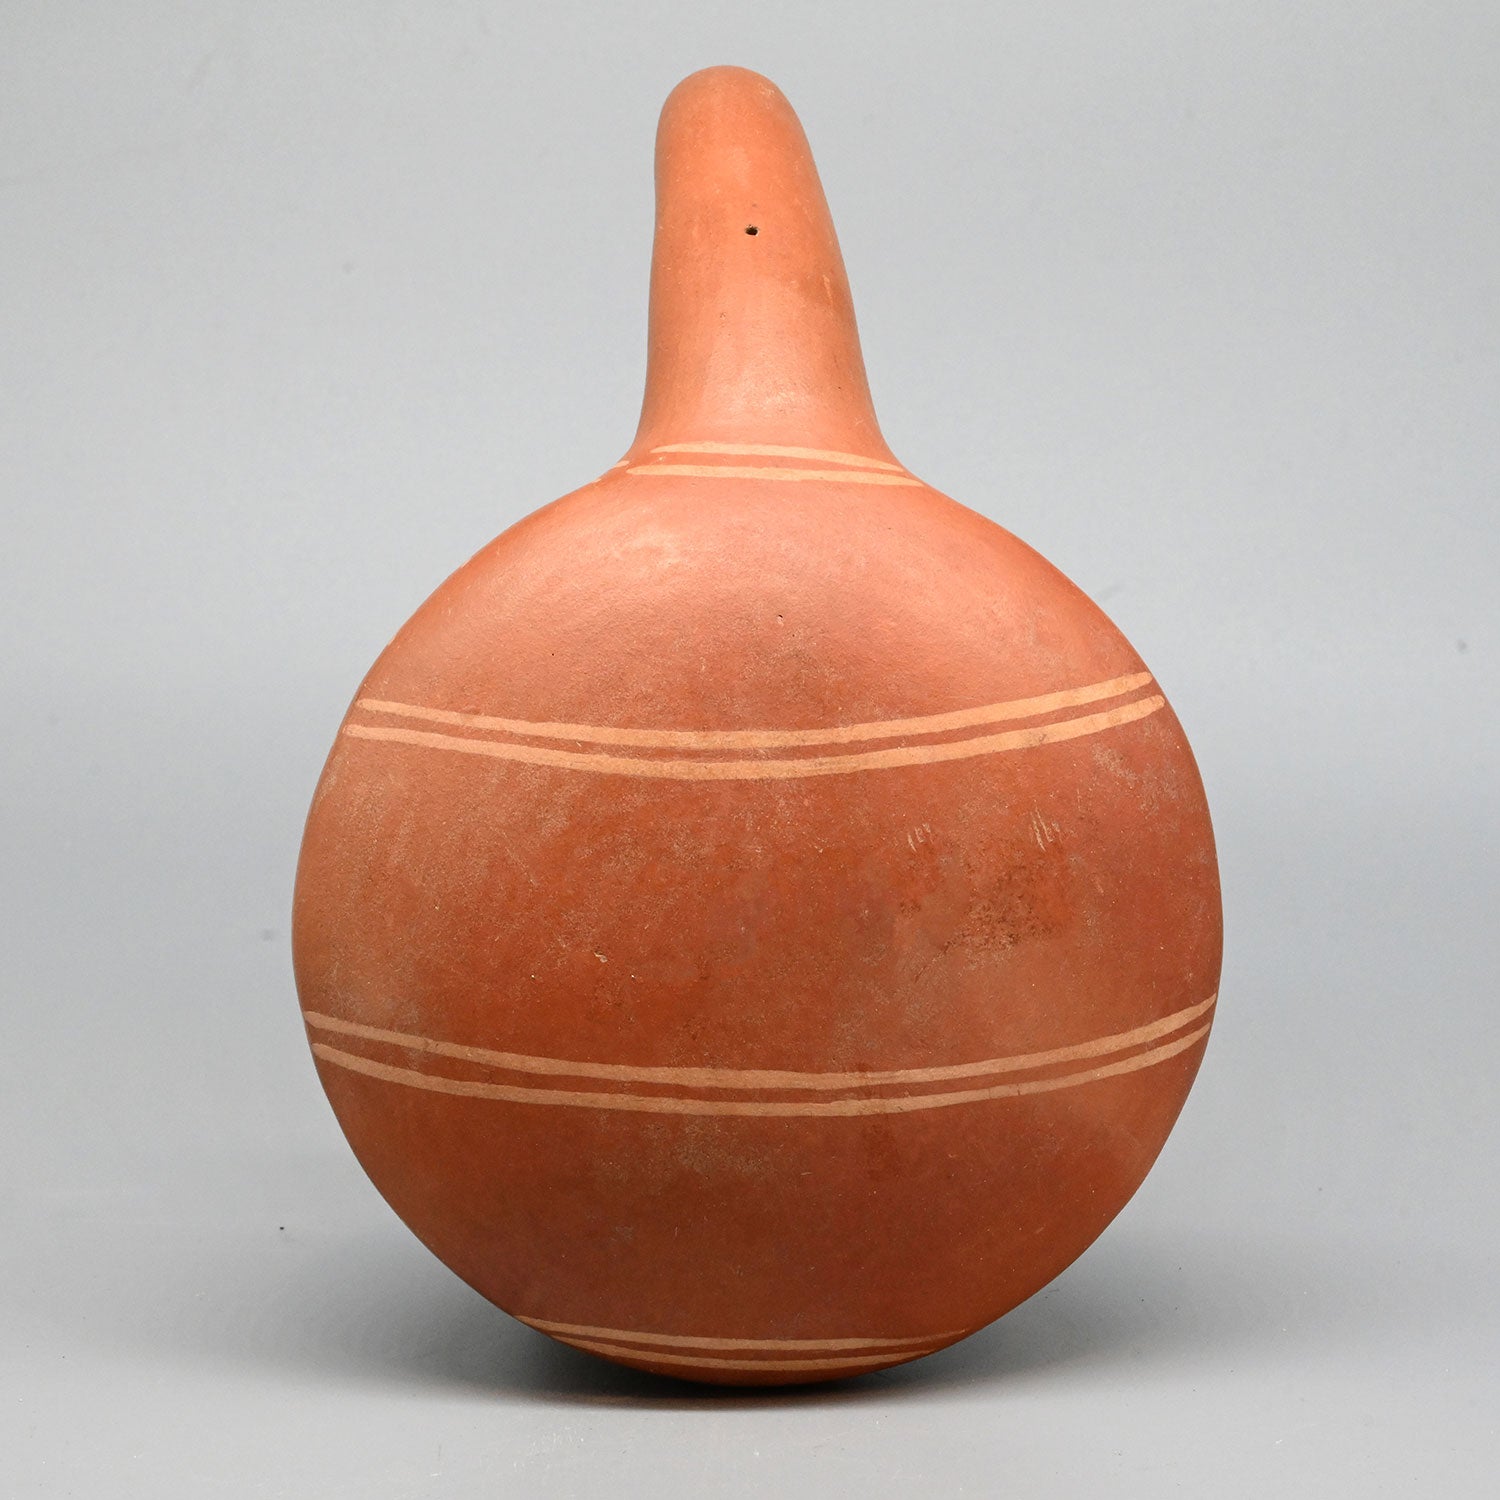 A Moche Terracotta Corn Popper Vessel, Middle Horizon Period, ca. 500 - 700 CE